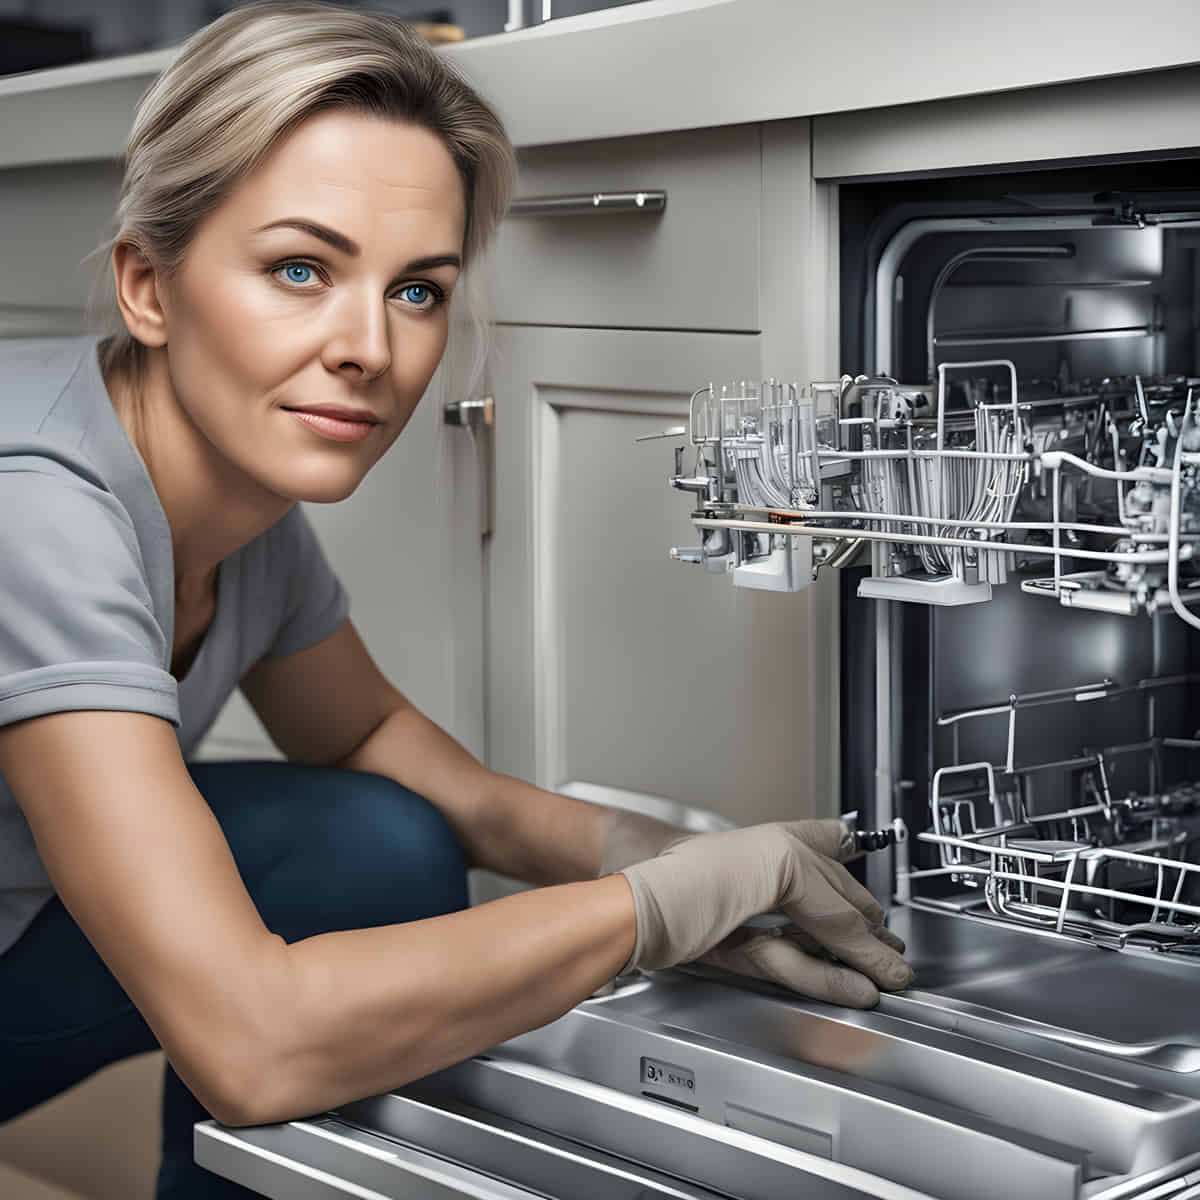 Bosch dishwasher reset not working